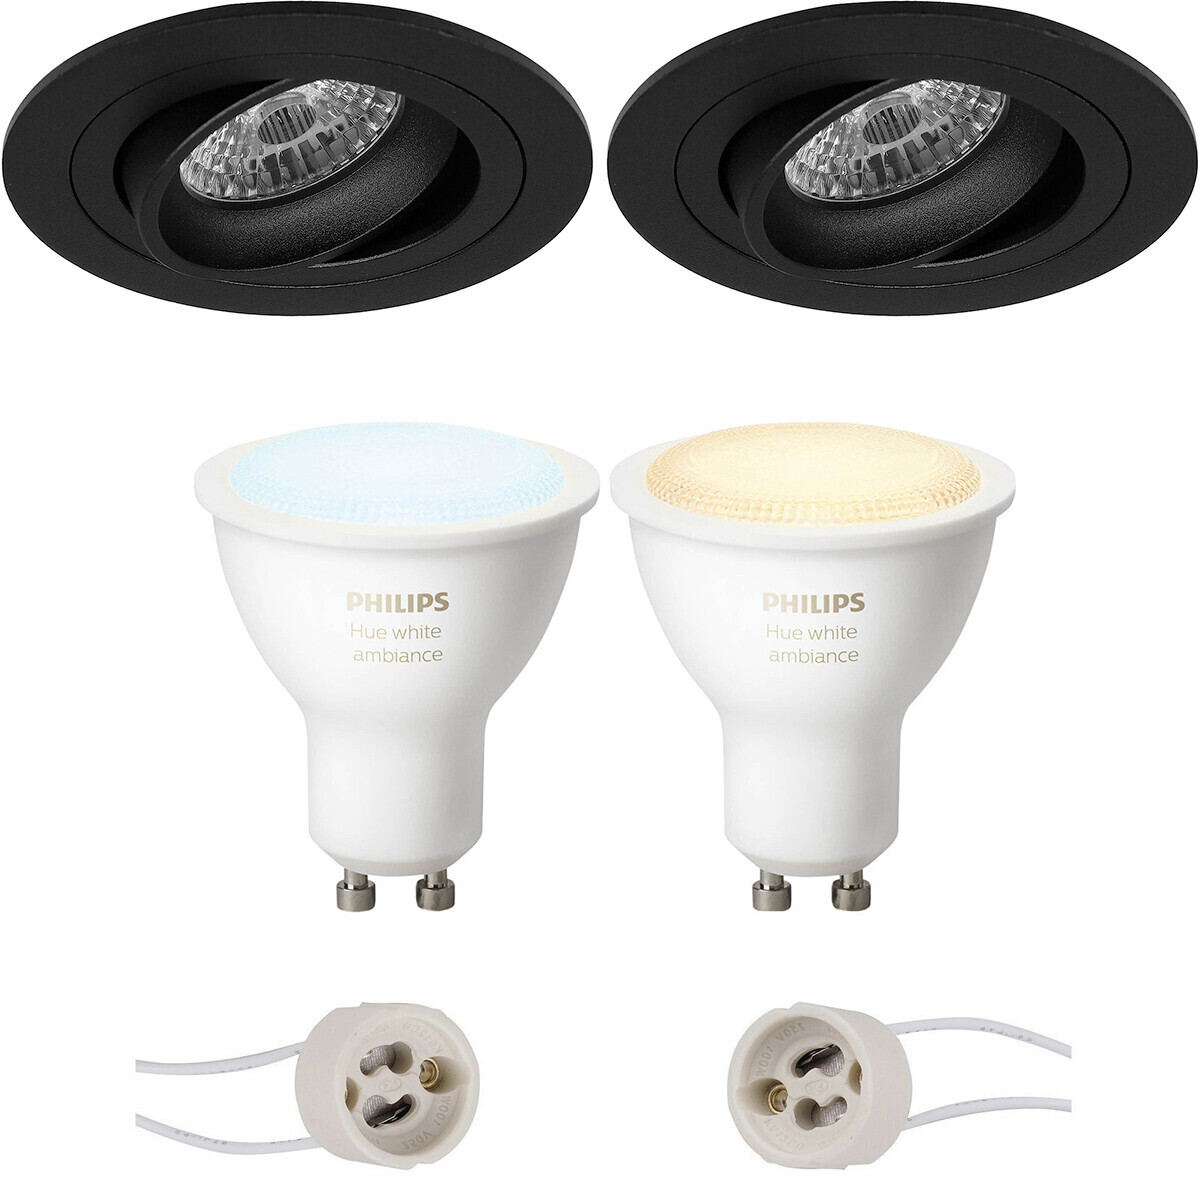 BES LED Pragmi Alpin Pro - Inbouw Rond - Mat Zwart - Kantelbaar Ø92mm - Philips Hue - LED Spot Set GU10 - White Ambiance - Bluetooth